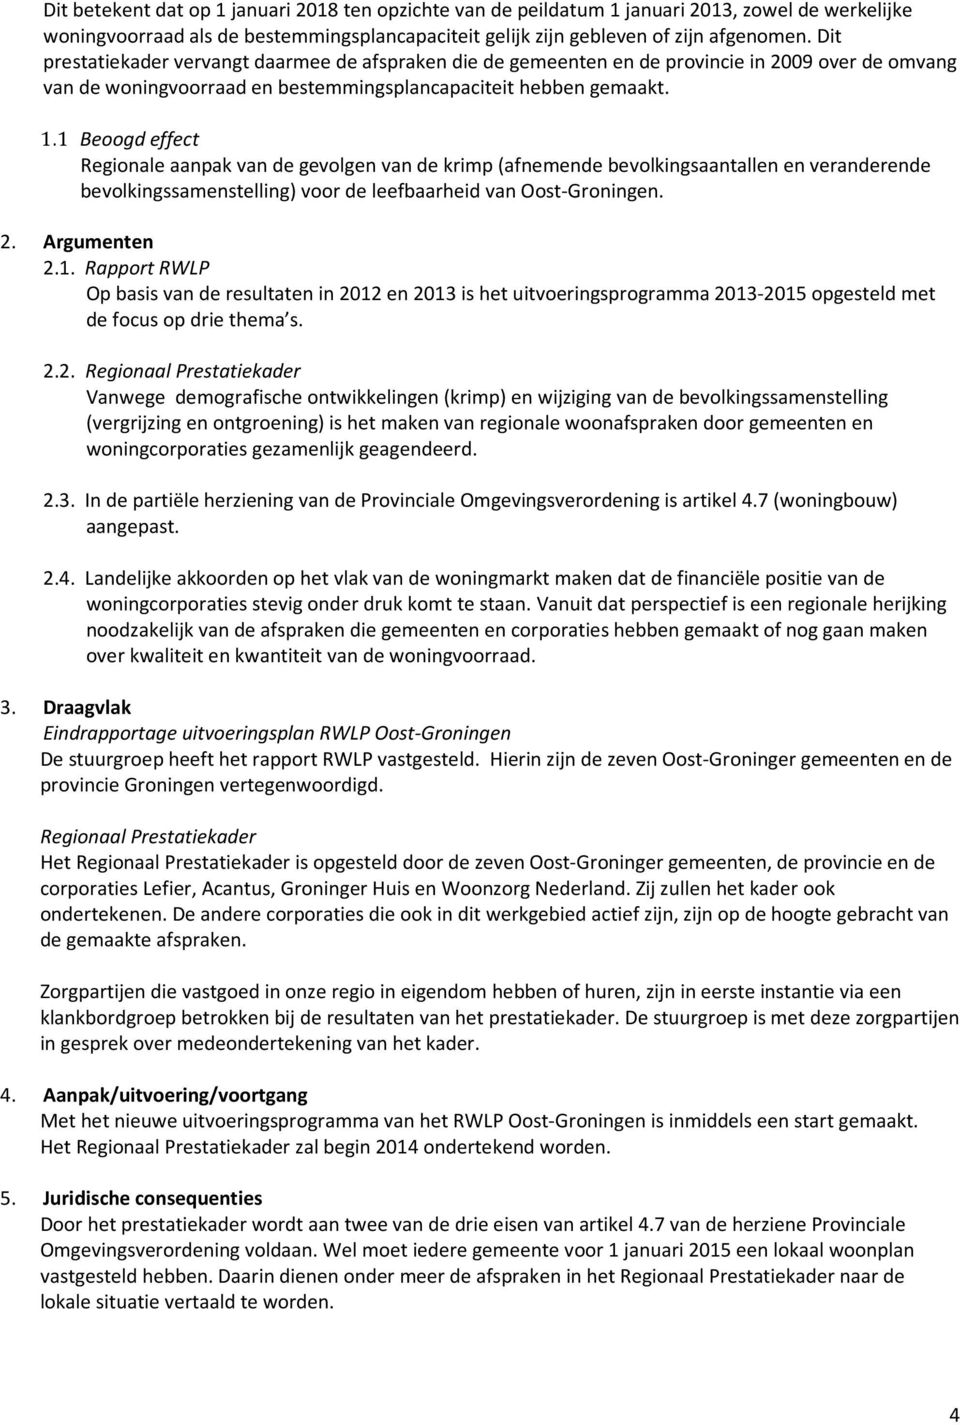 1 Beoogd effect Regionale aanpak van de gevolgen van de krimp (afnemende bevolkingsaantallen en veranderende bevolkingssamenstelling) voor de leefbaarheid van Oost-Groningen. 2. Argumenten 2.1. Rapport RWLP Op basis van de resultaten in 2012 en 2013 is het uitvoeringsprogramma 2013-2015 opgesteld met de focus op drie thema s.